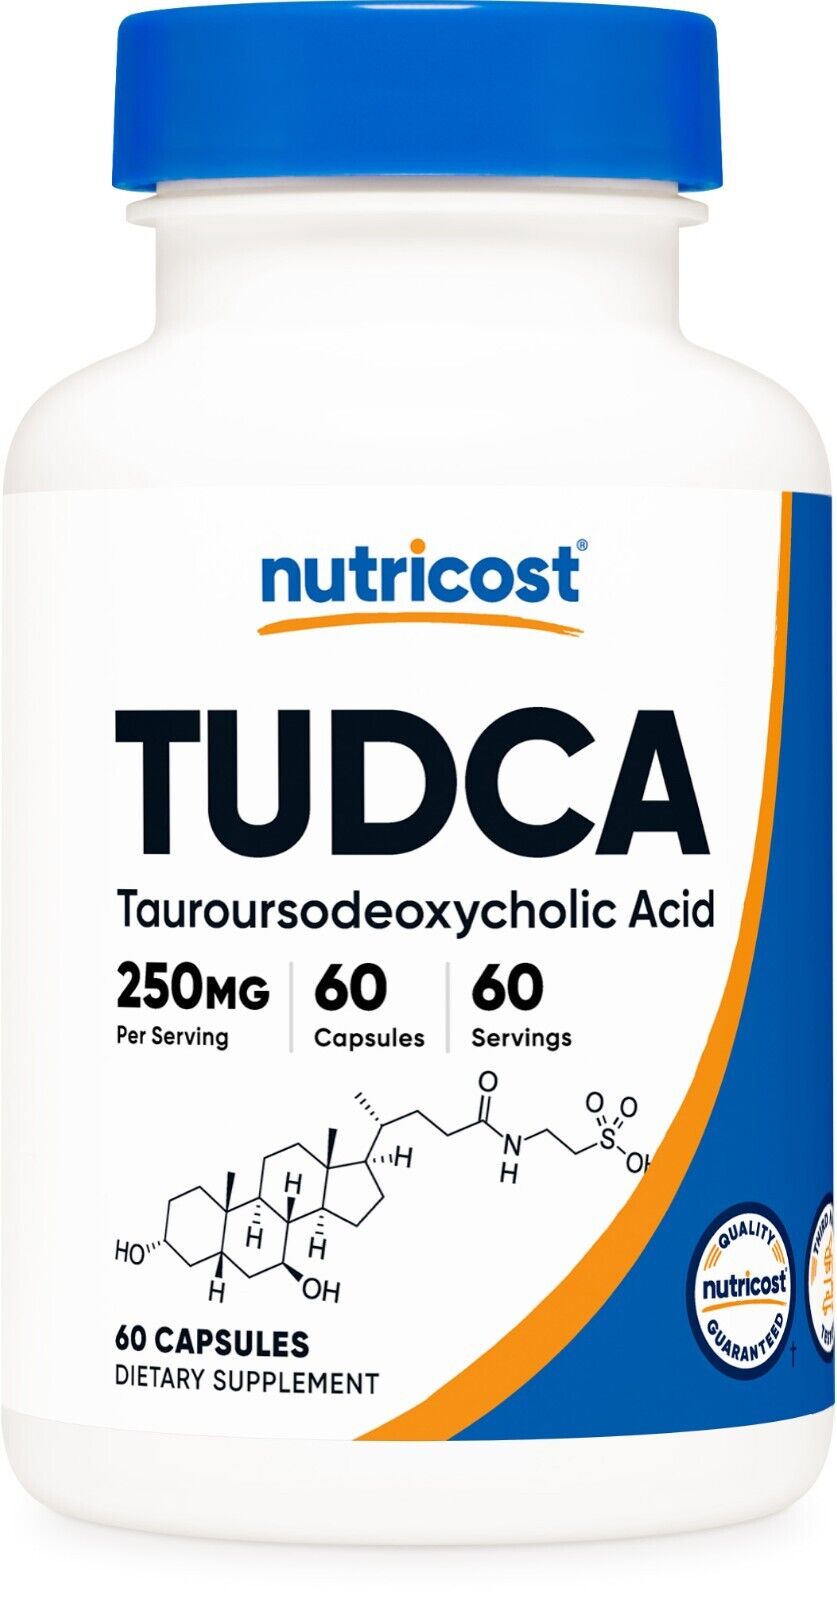 Таблетки Nutricost TUDCA, 250 мг в капсуле, 60 капсул